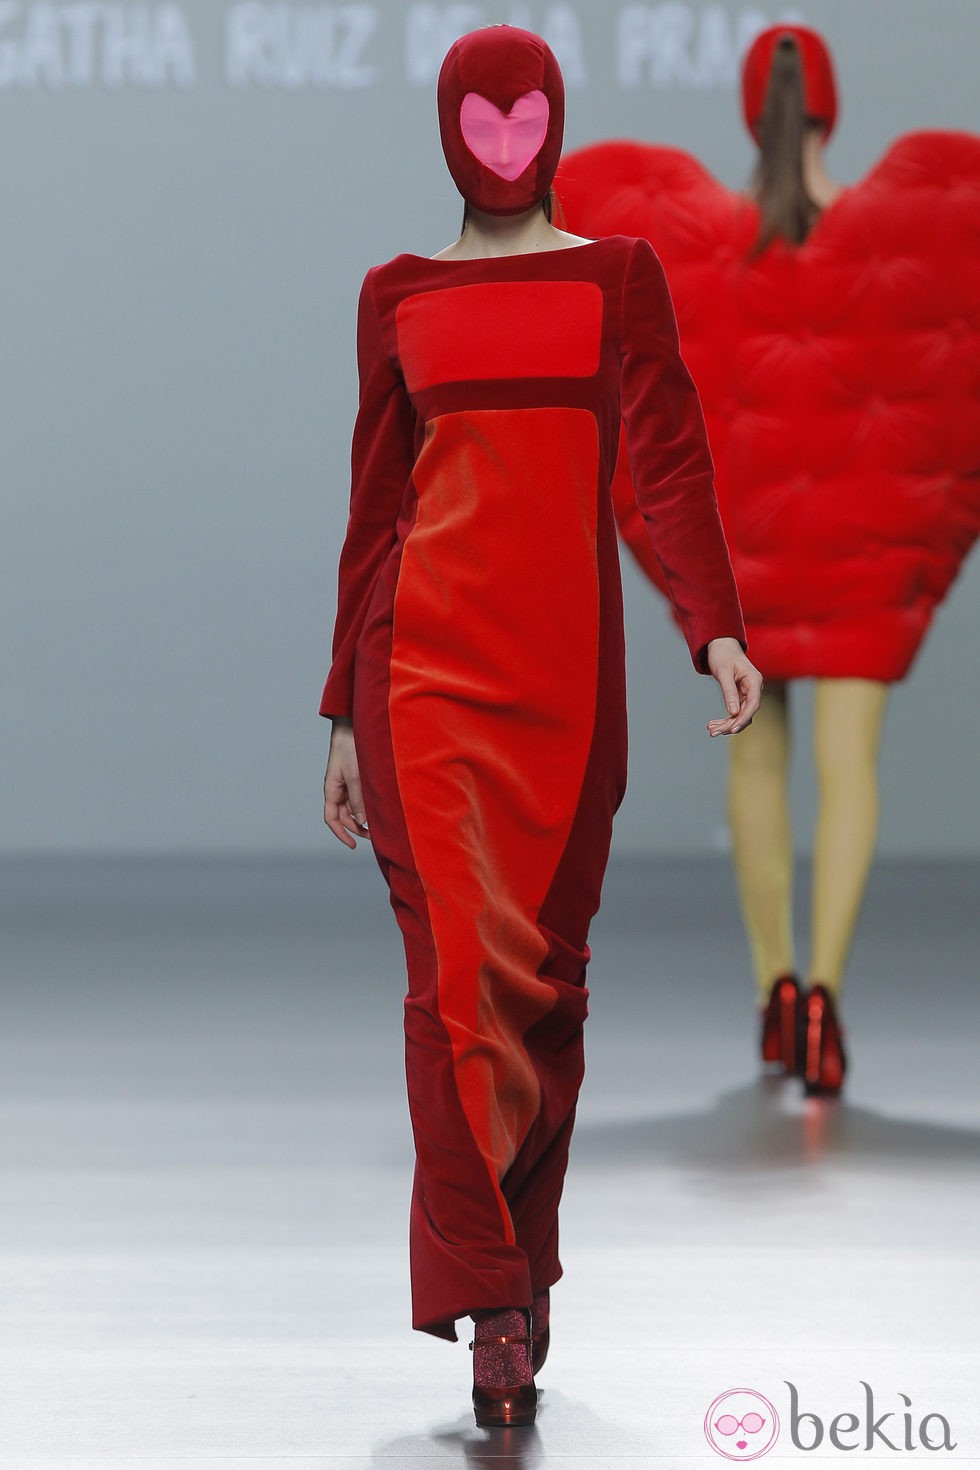 Vestido rojo y granate de la colección otoño/invierno 2013/2014 de Ágatha Ruiz de la Prada en Madrid Fashion Week